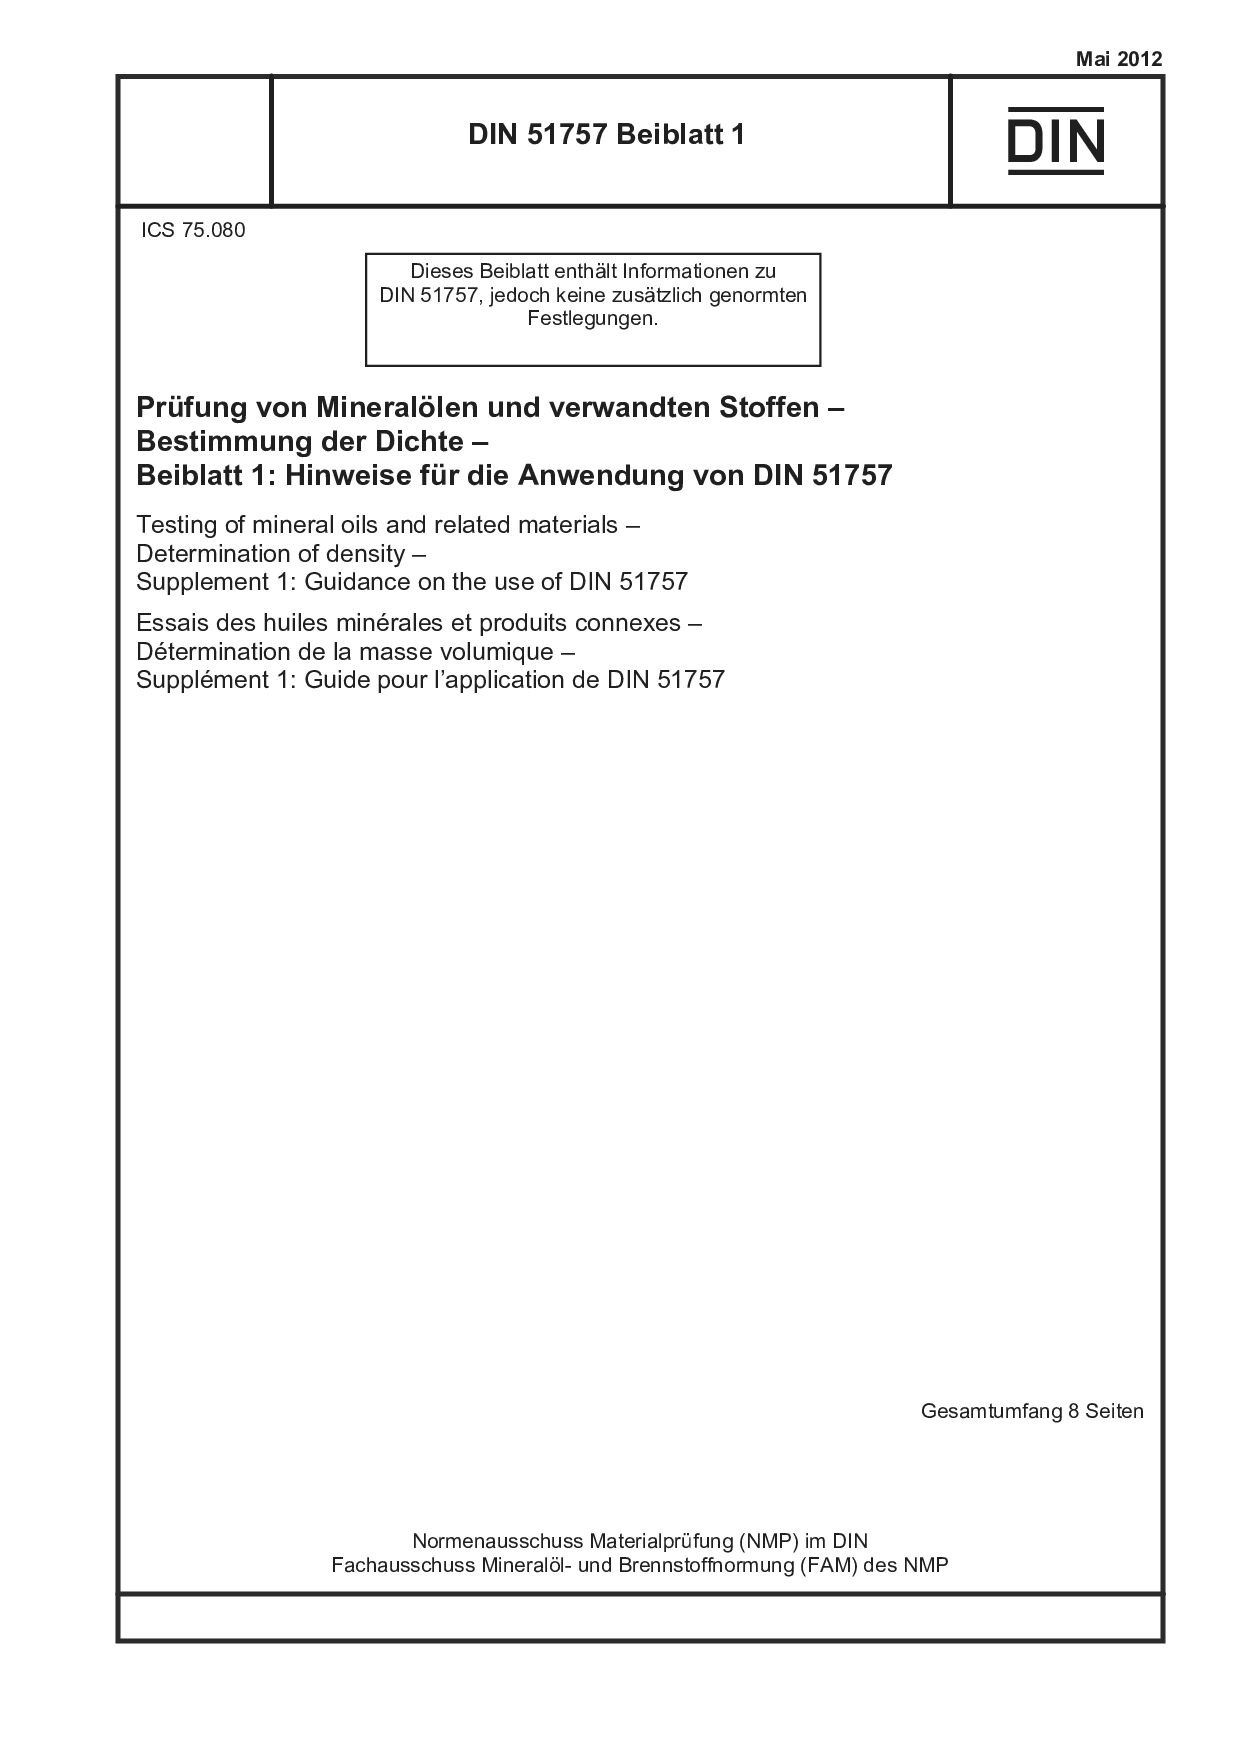 DIN 51757 Beiblatt 1:2012-05